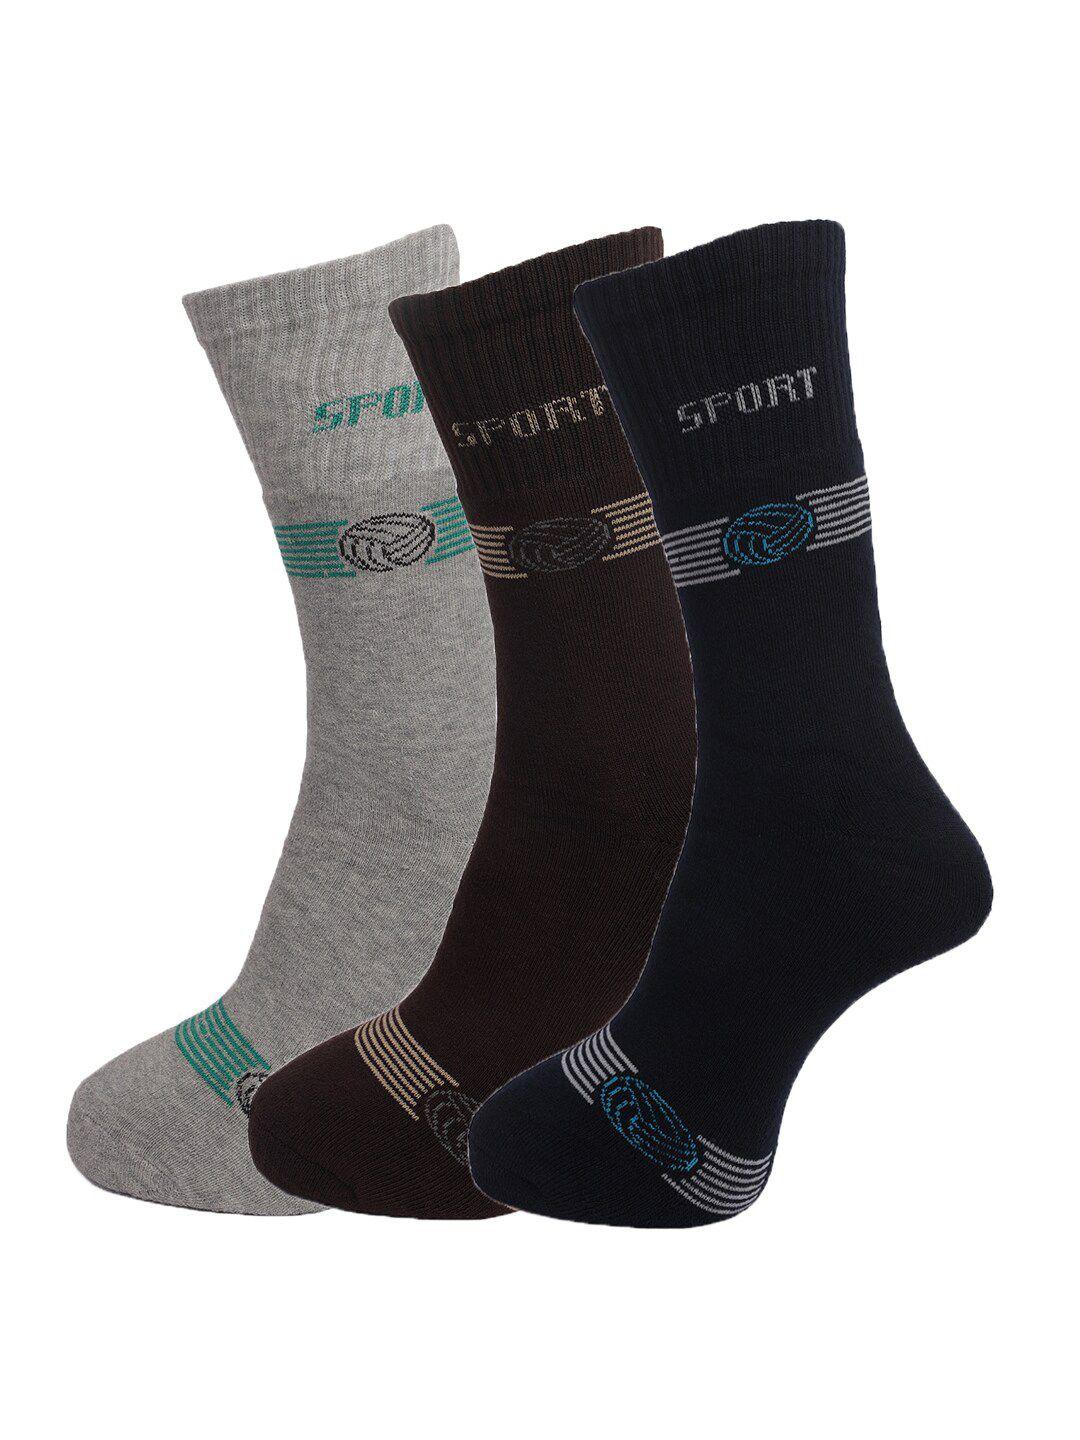 dollar-socks-men-pack-of-3-assorted-cotton-above-ankle-length-socks